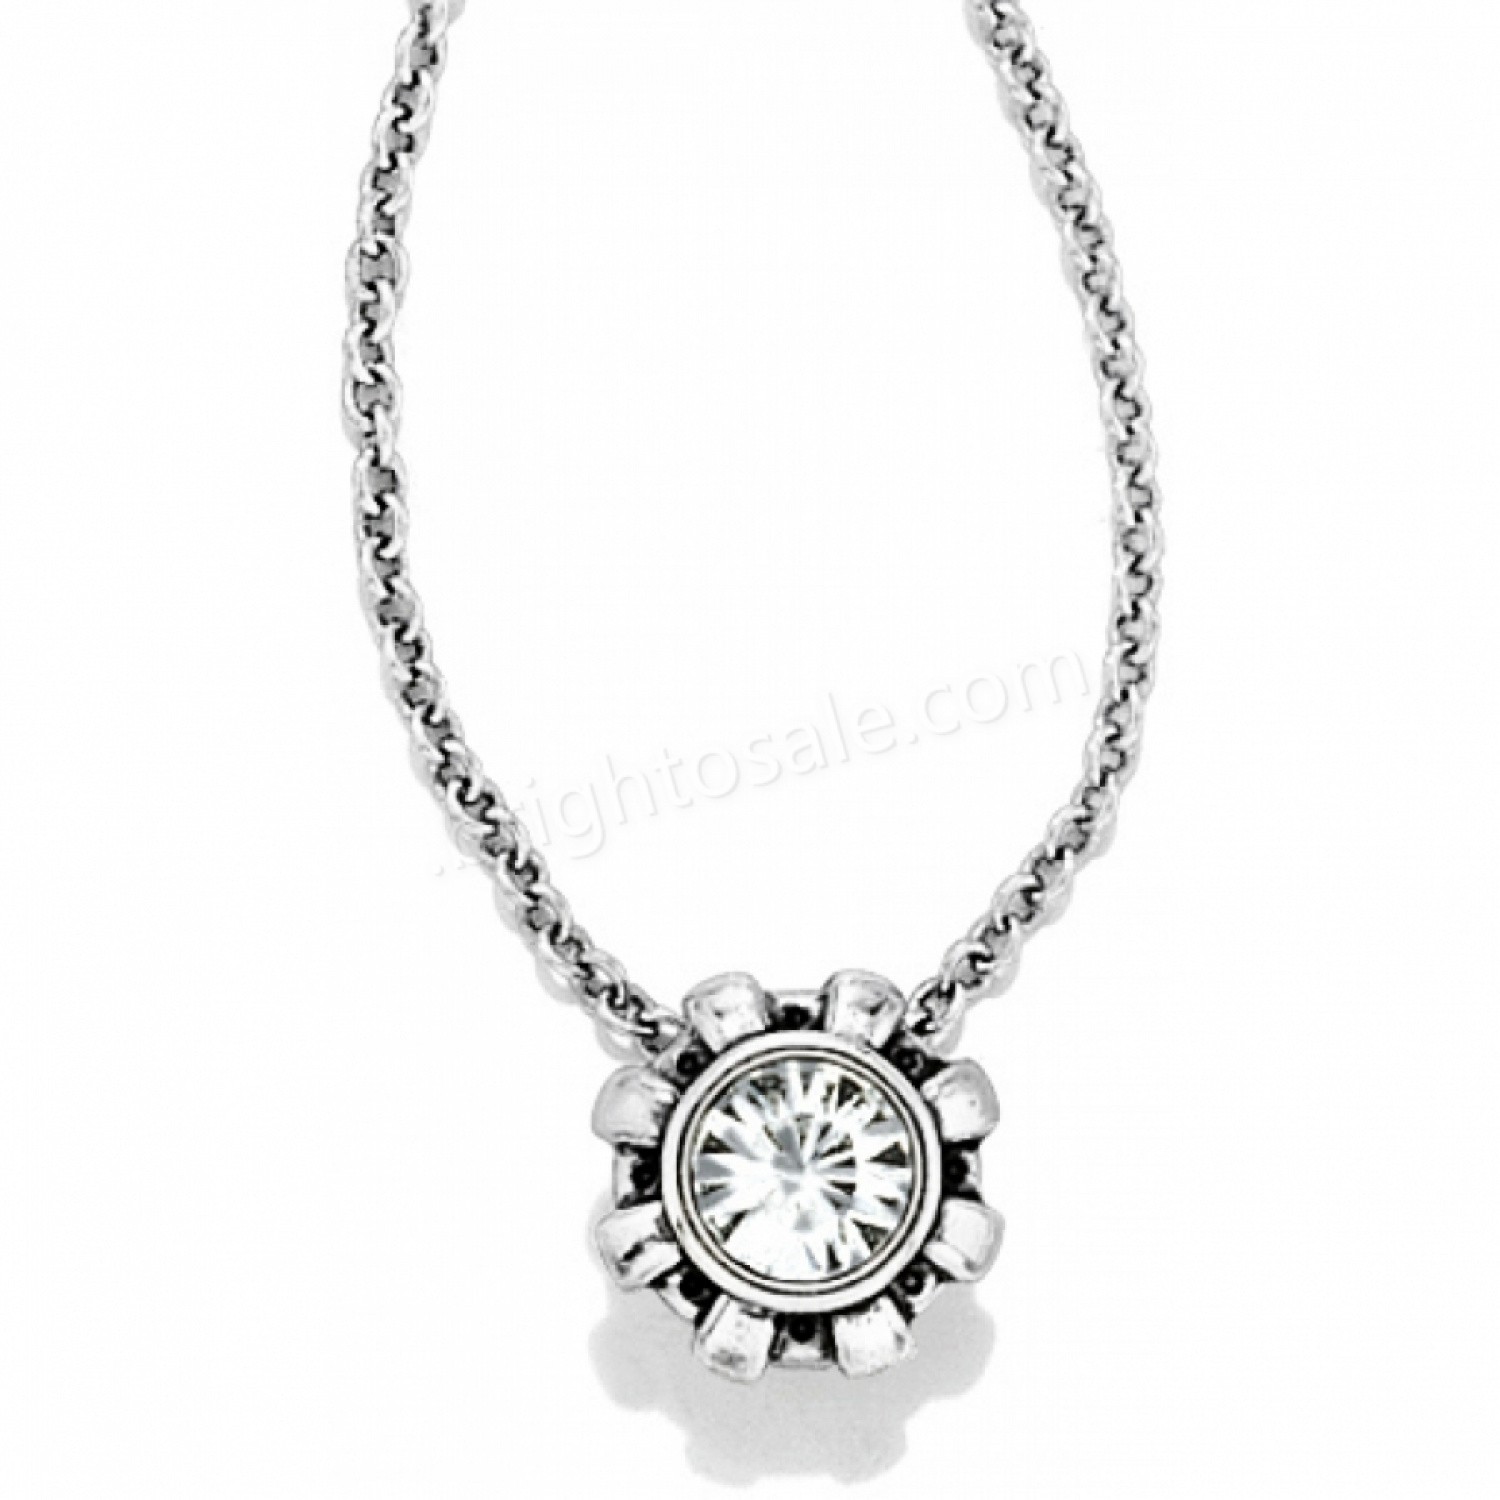 Brighton Collectibles & Online Discount Dazzler Necklace - Brighton Collectibles & Online Discount Dazzler Necklace